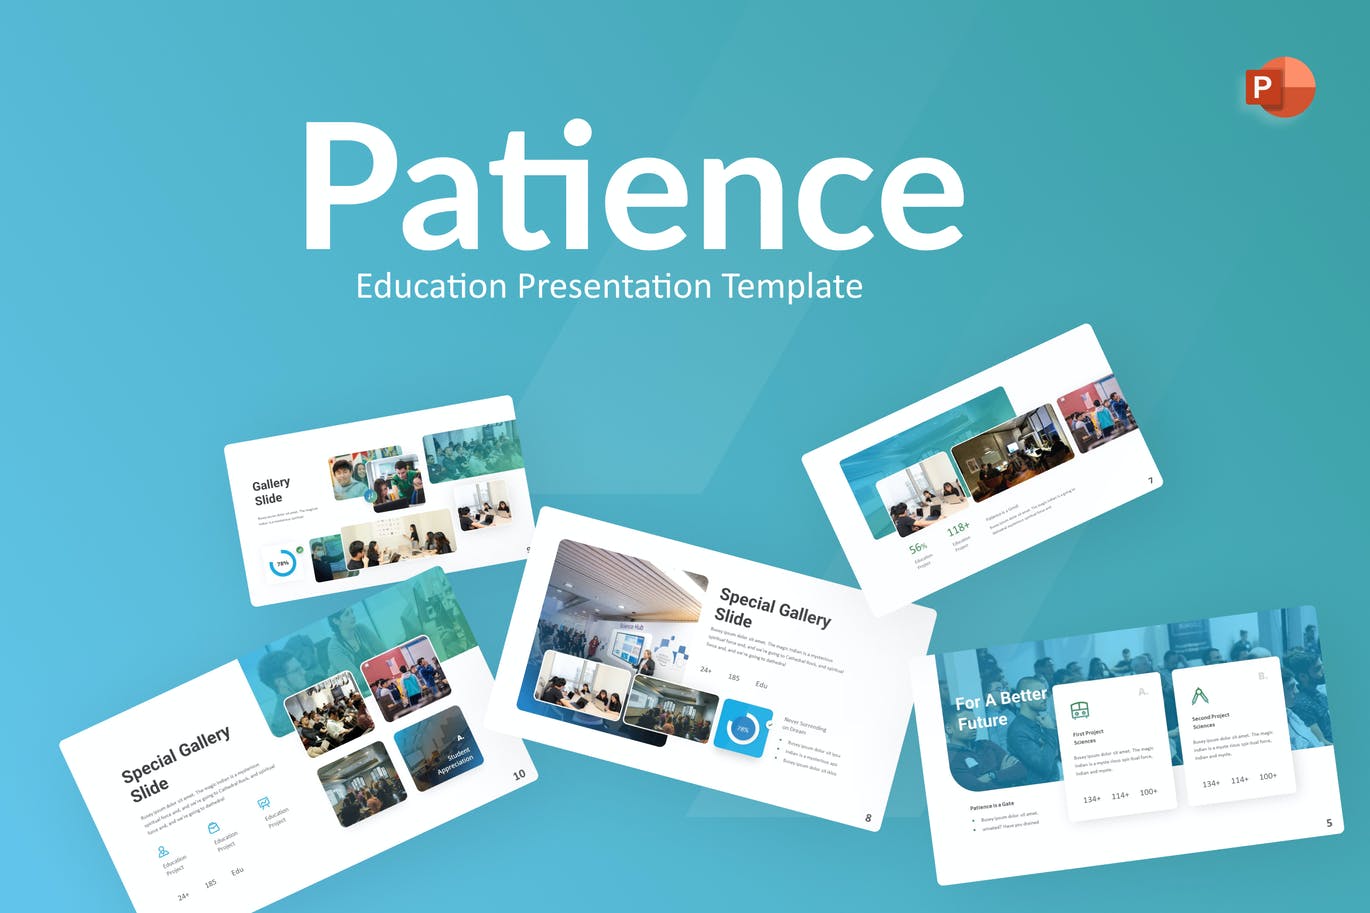 耐心教育PowerPoint演示文稿模板 Patience Education PowerPoint Template 幻灯图表 第1张